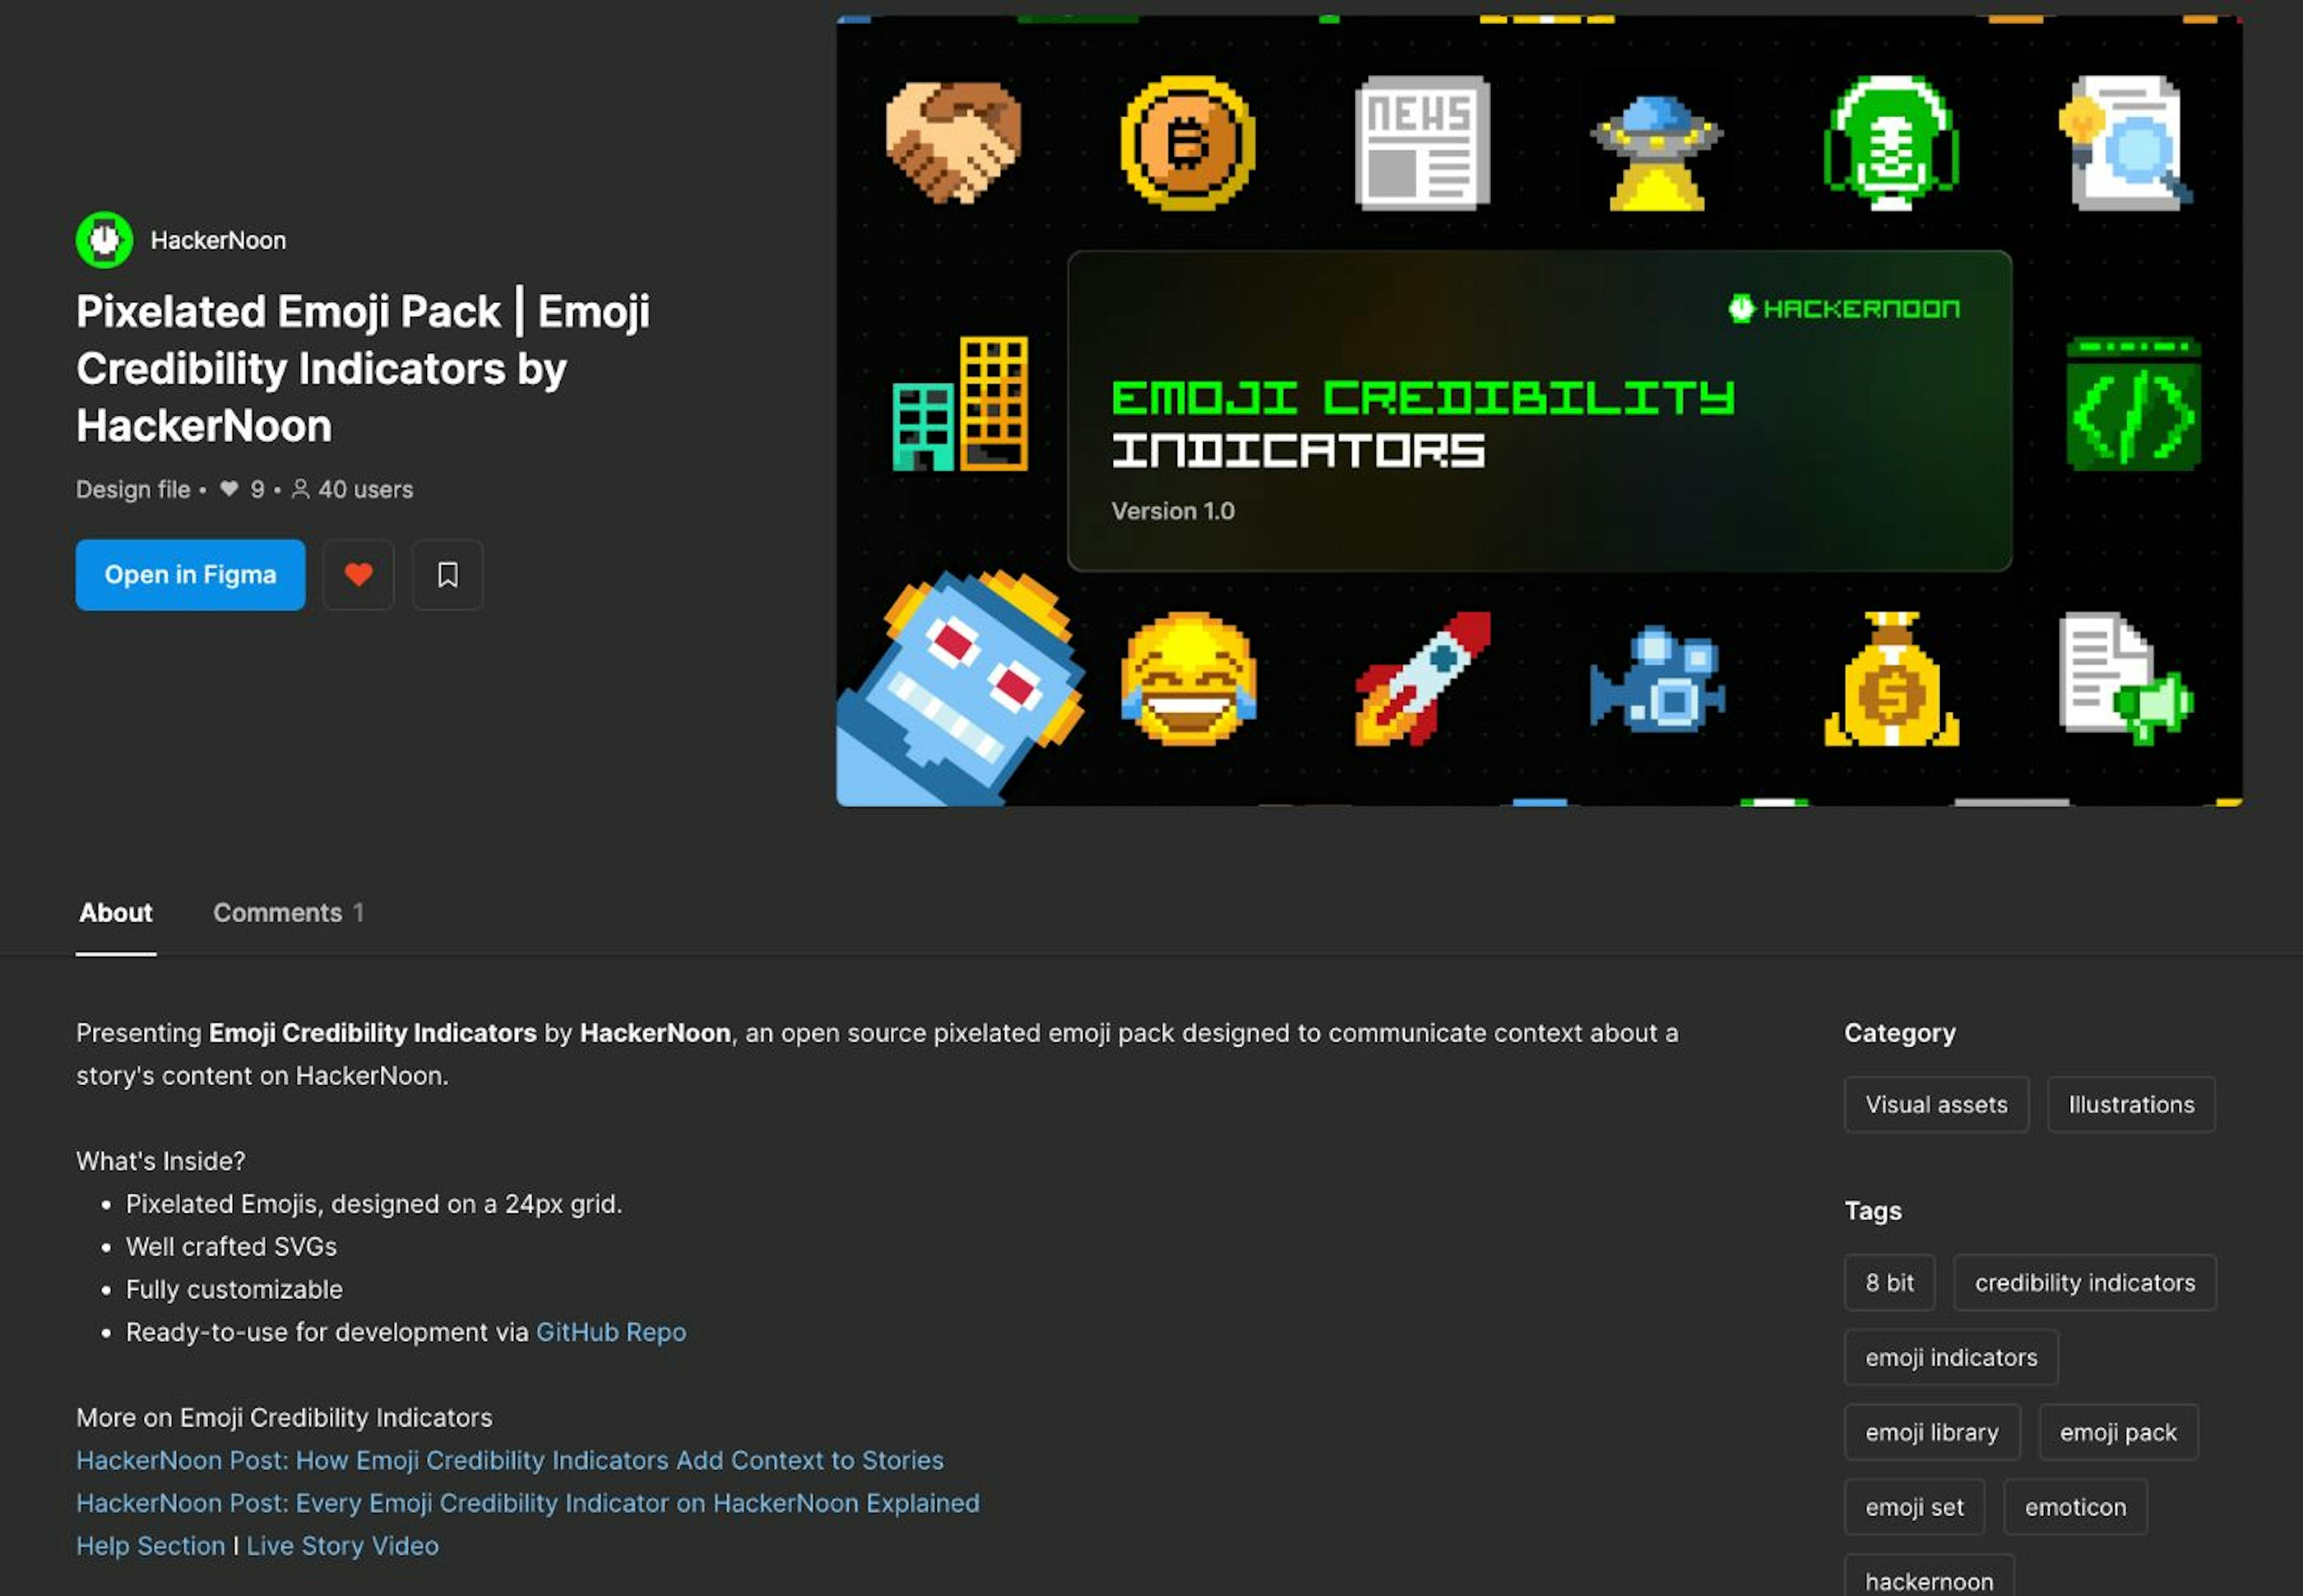 ¡Paquete de emojis pixelados de HackerNoon en Figma!